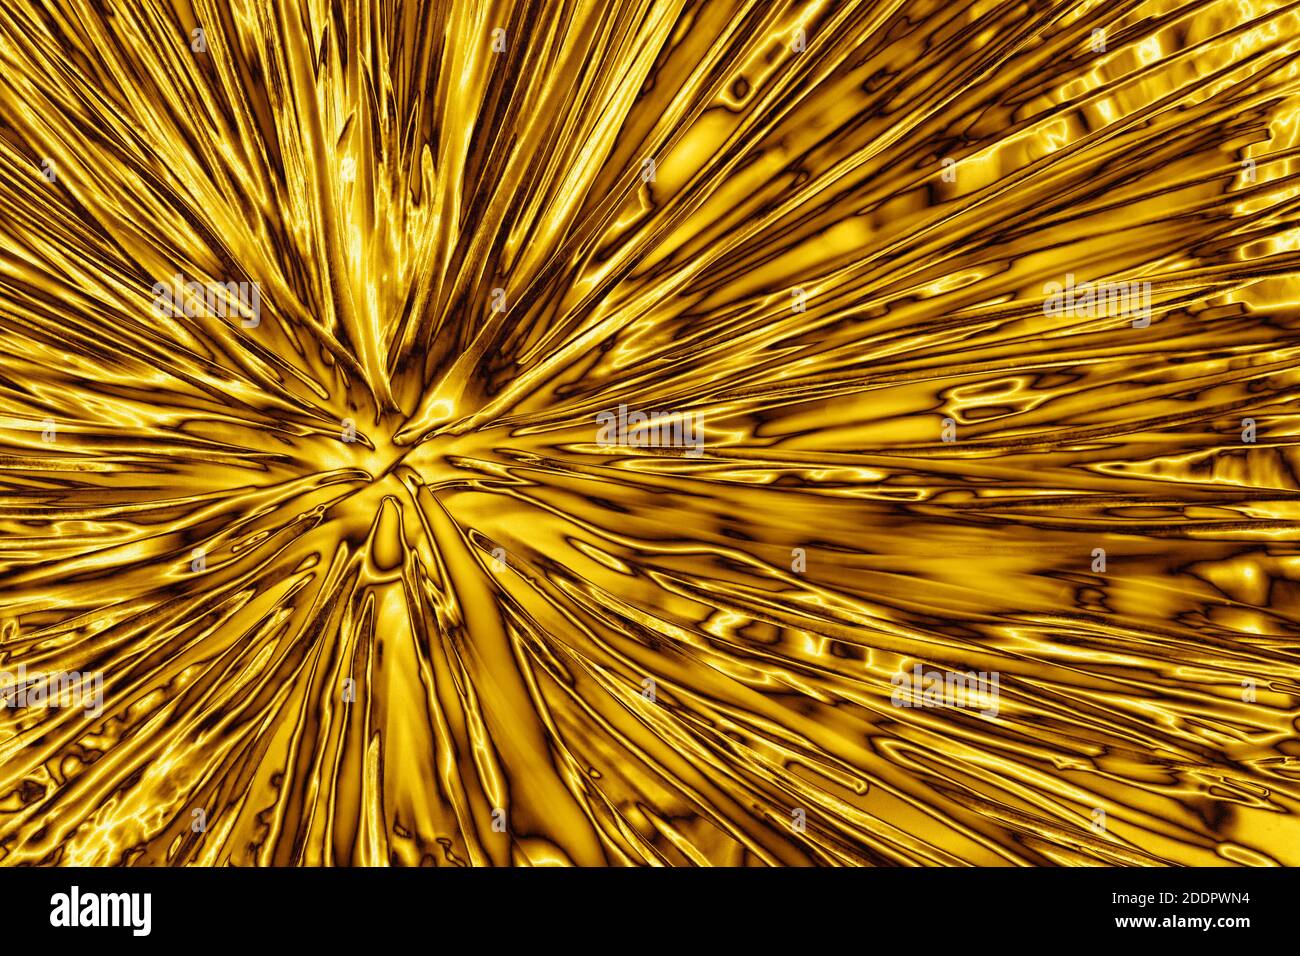 Hình ảnh trừu tượng của nền tảng tia sáng vàng rực rỡ sẽ khiến bạn điêu đứng vì quá sáng lấp lánh và đẳng cấp. Tuyệt vời cho việc thiết kế máy tính hoặc trang trí phòng, hình ảnh chắc chắn sẽ tạo nên điểm nhấn bắt mắt đầy bản sắc.